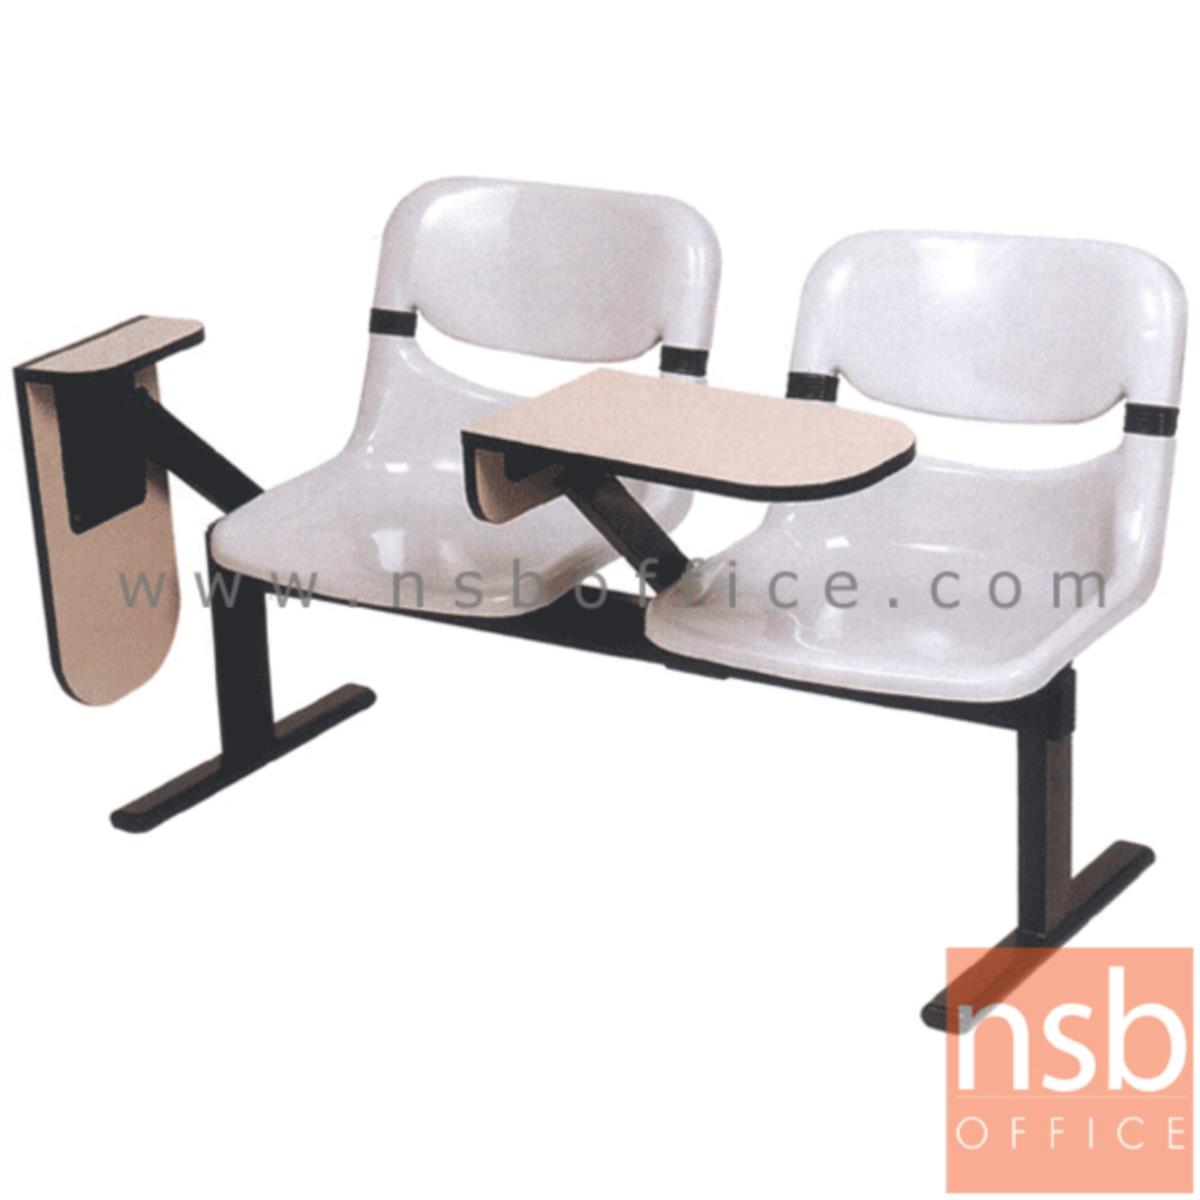 เก้าอี้เลคเชอร์แถวเฟรมโพลี่ รุ่น D990 2 ,3 และ 4 ที่นั่ง ขาเหล็กเหลี่ยมพ่นดำ